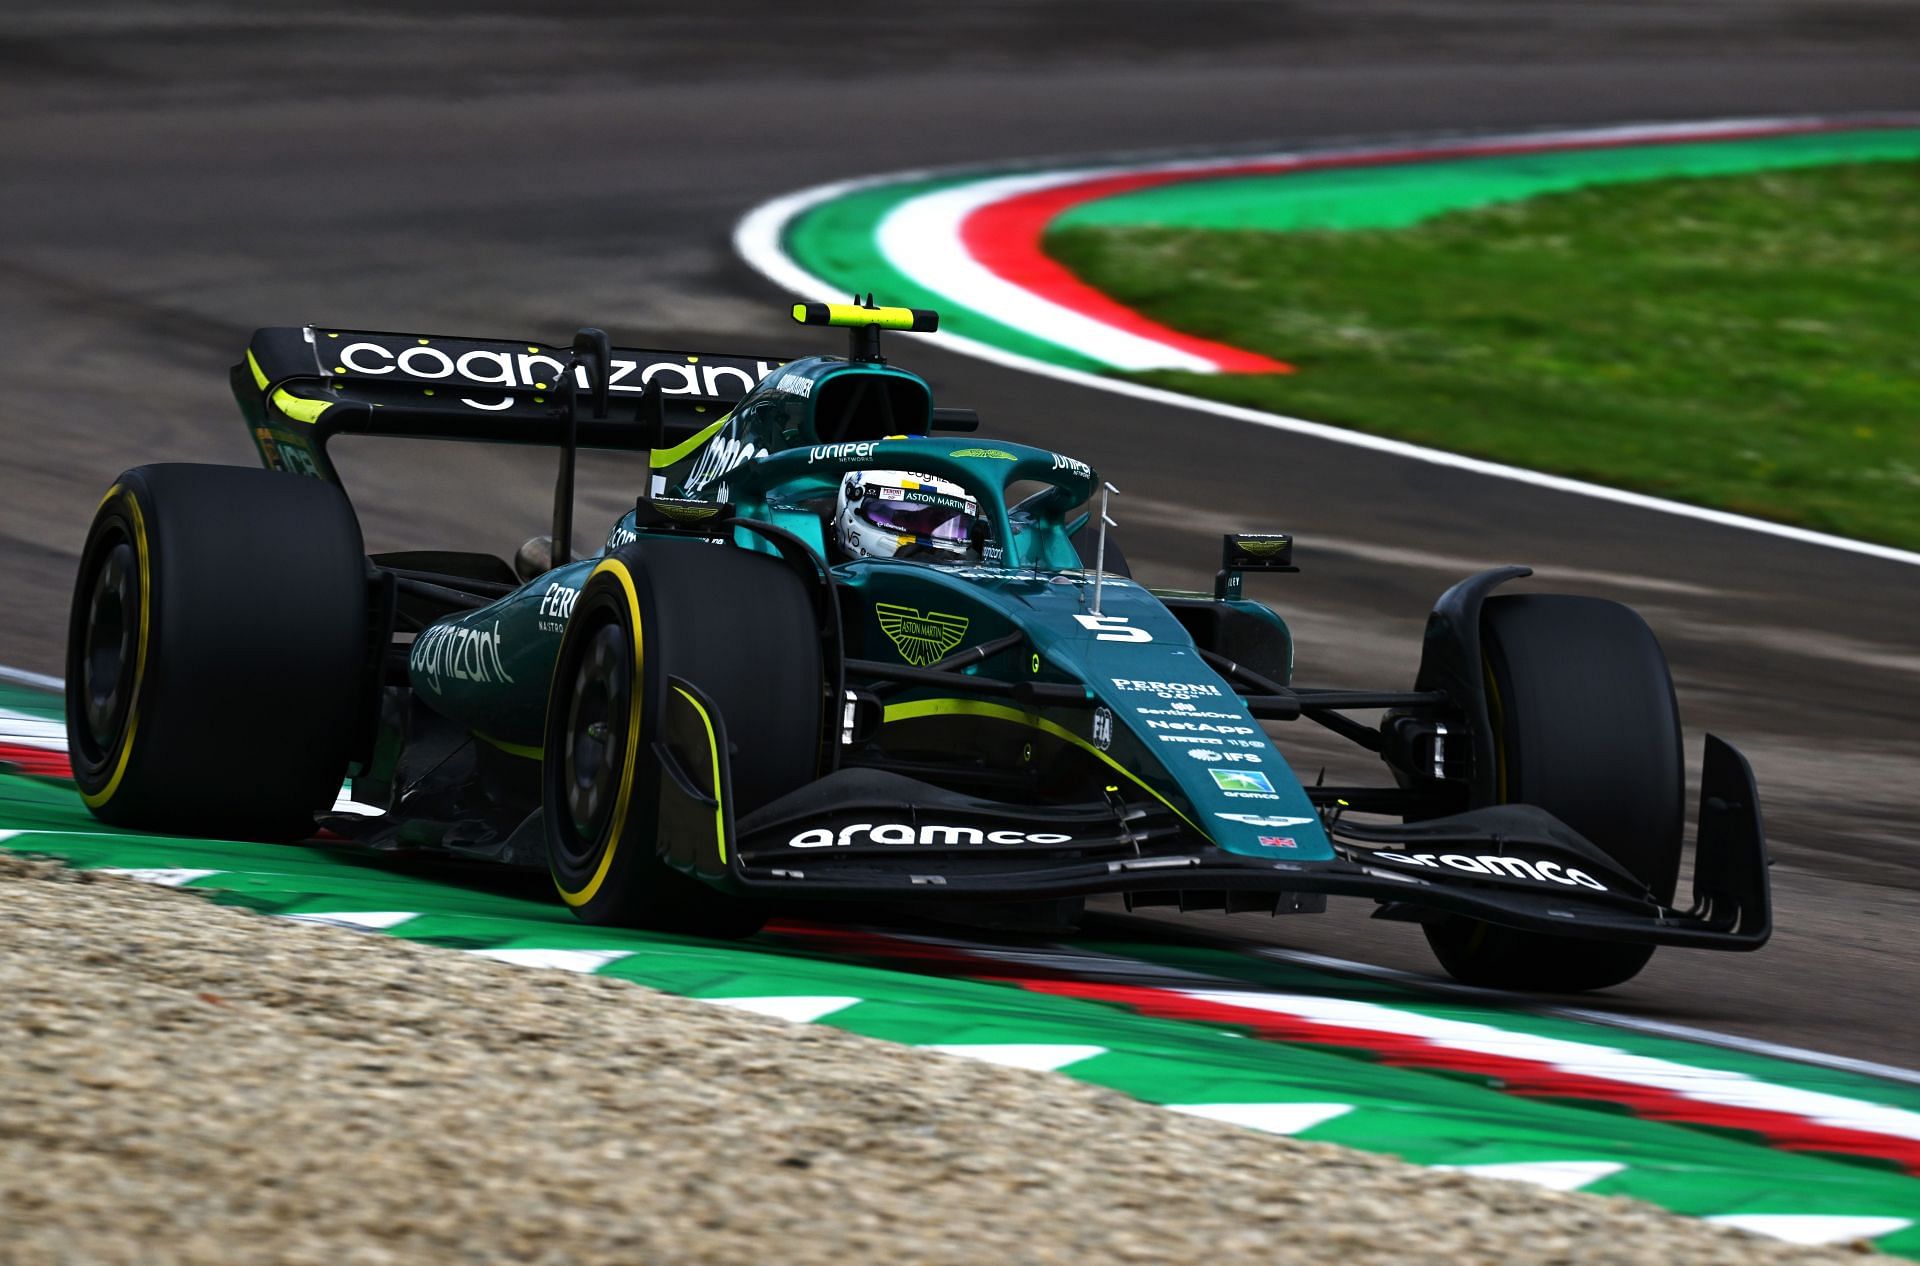 F1 Grand Prix of Emilia Romagna - Sebastian Vettel takes on the historic circuit.